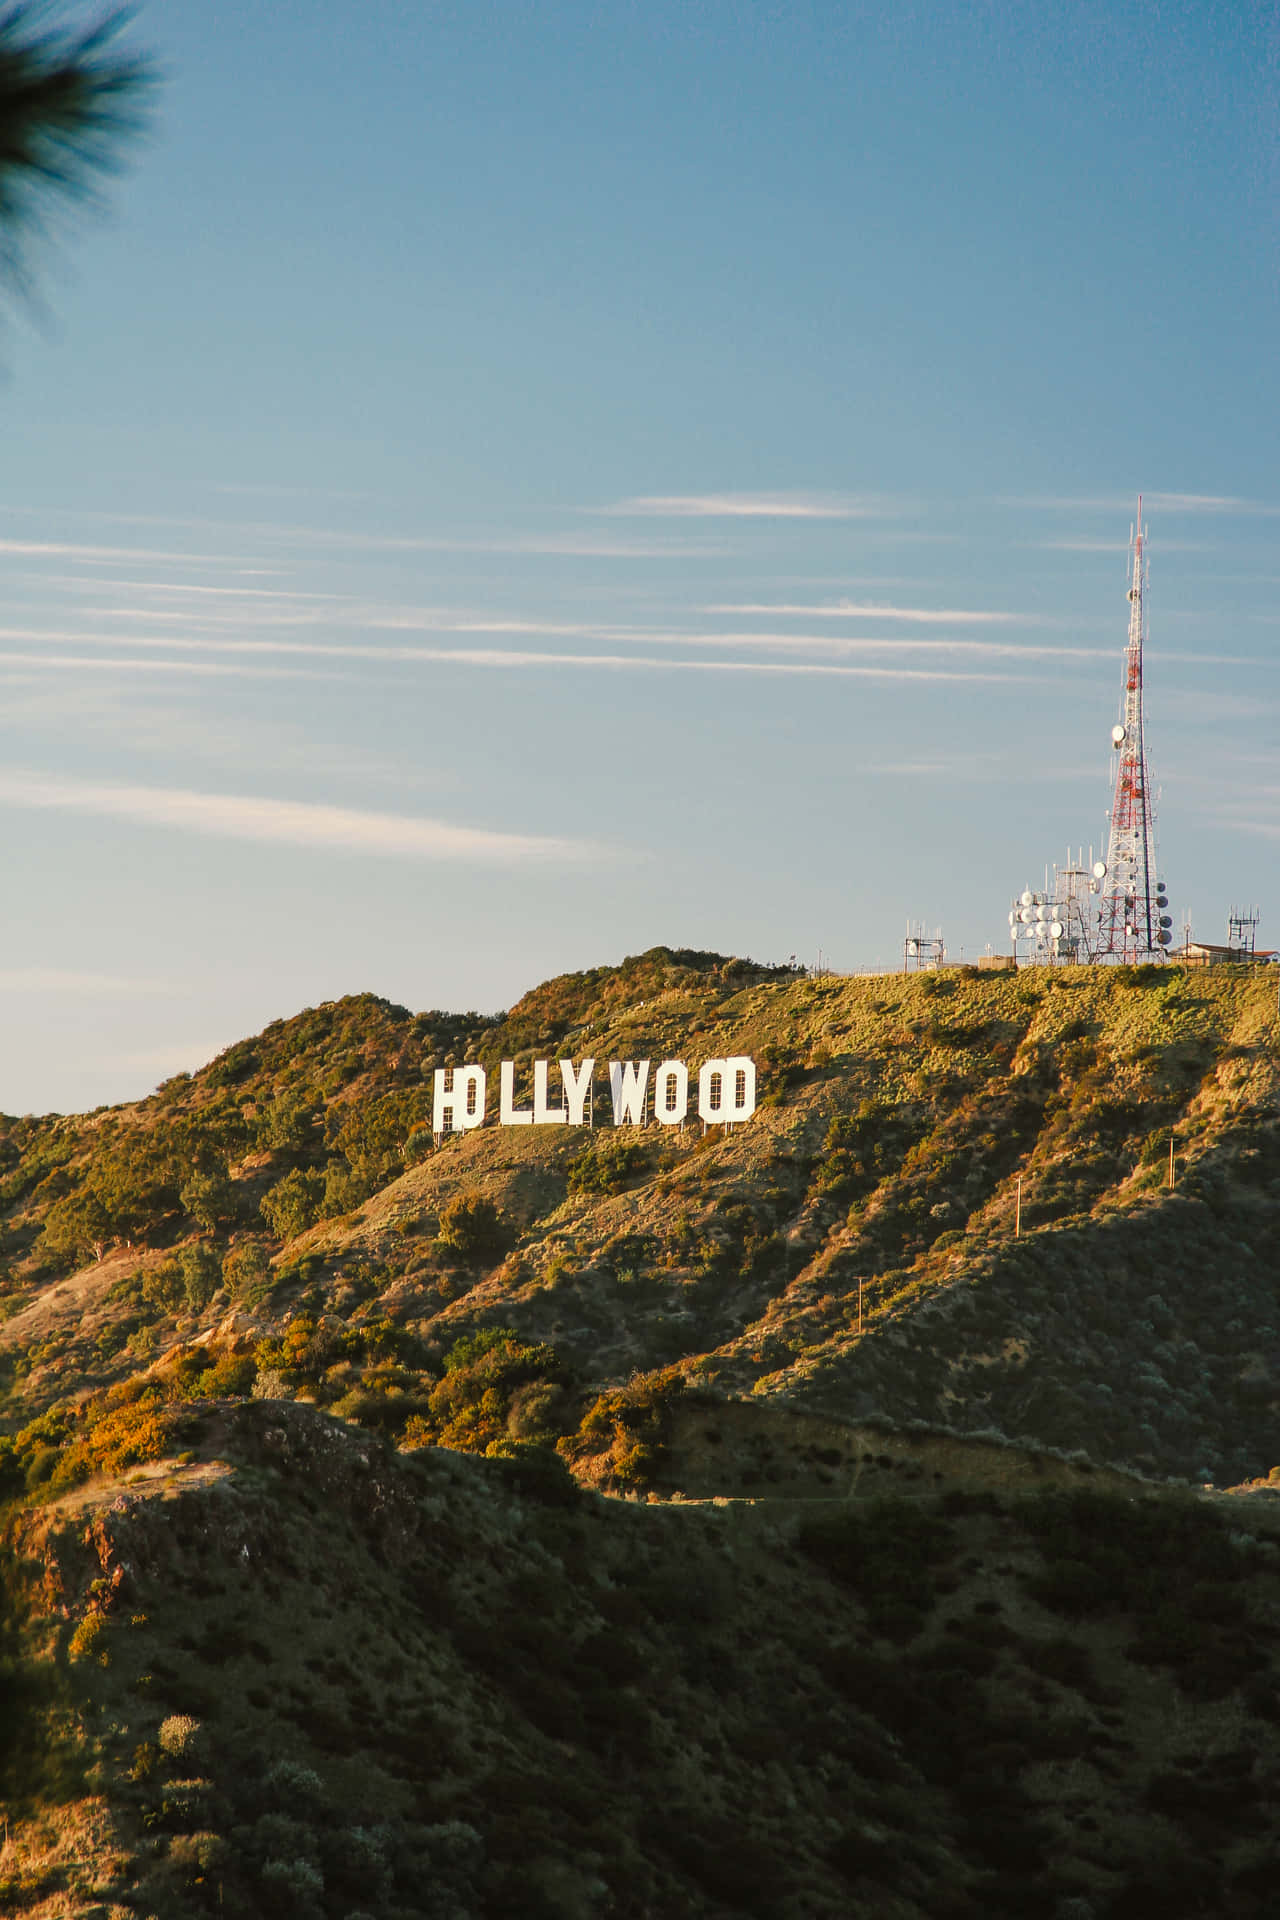 Hintergrundbildvon Hollywood-schild Bei Sonnenuntergang